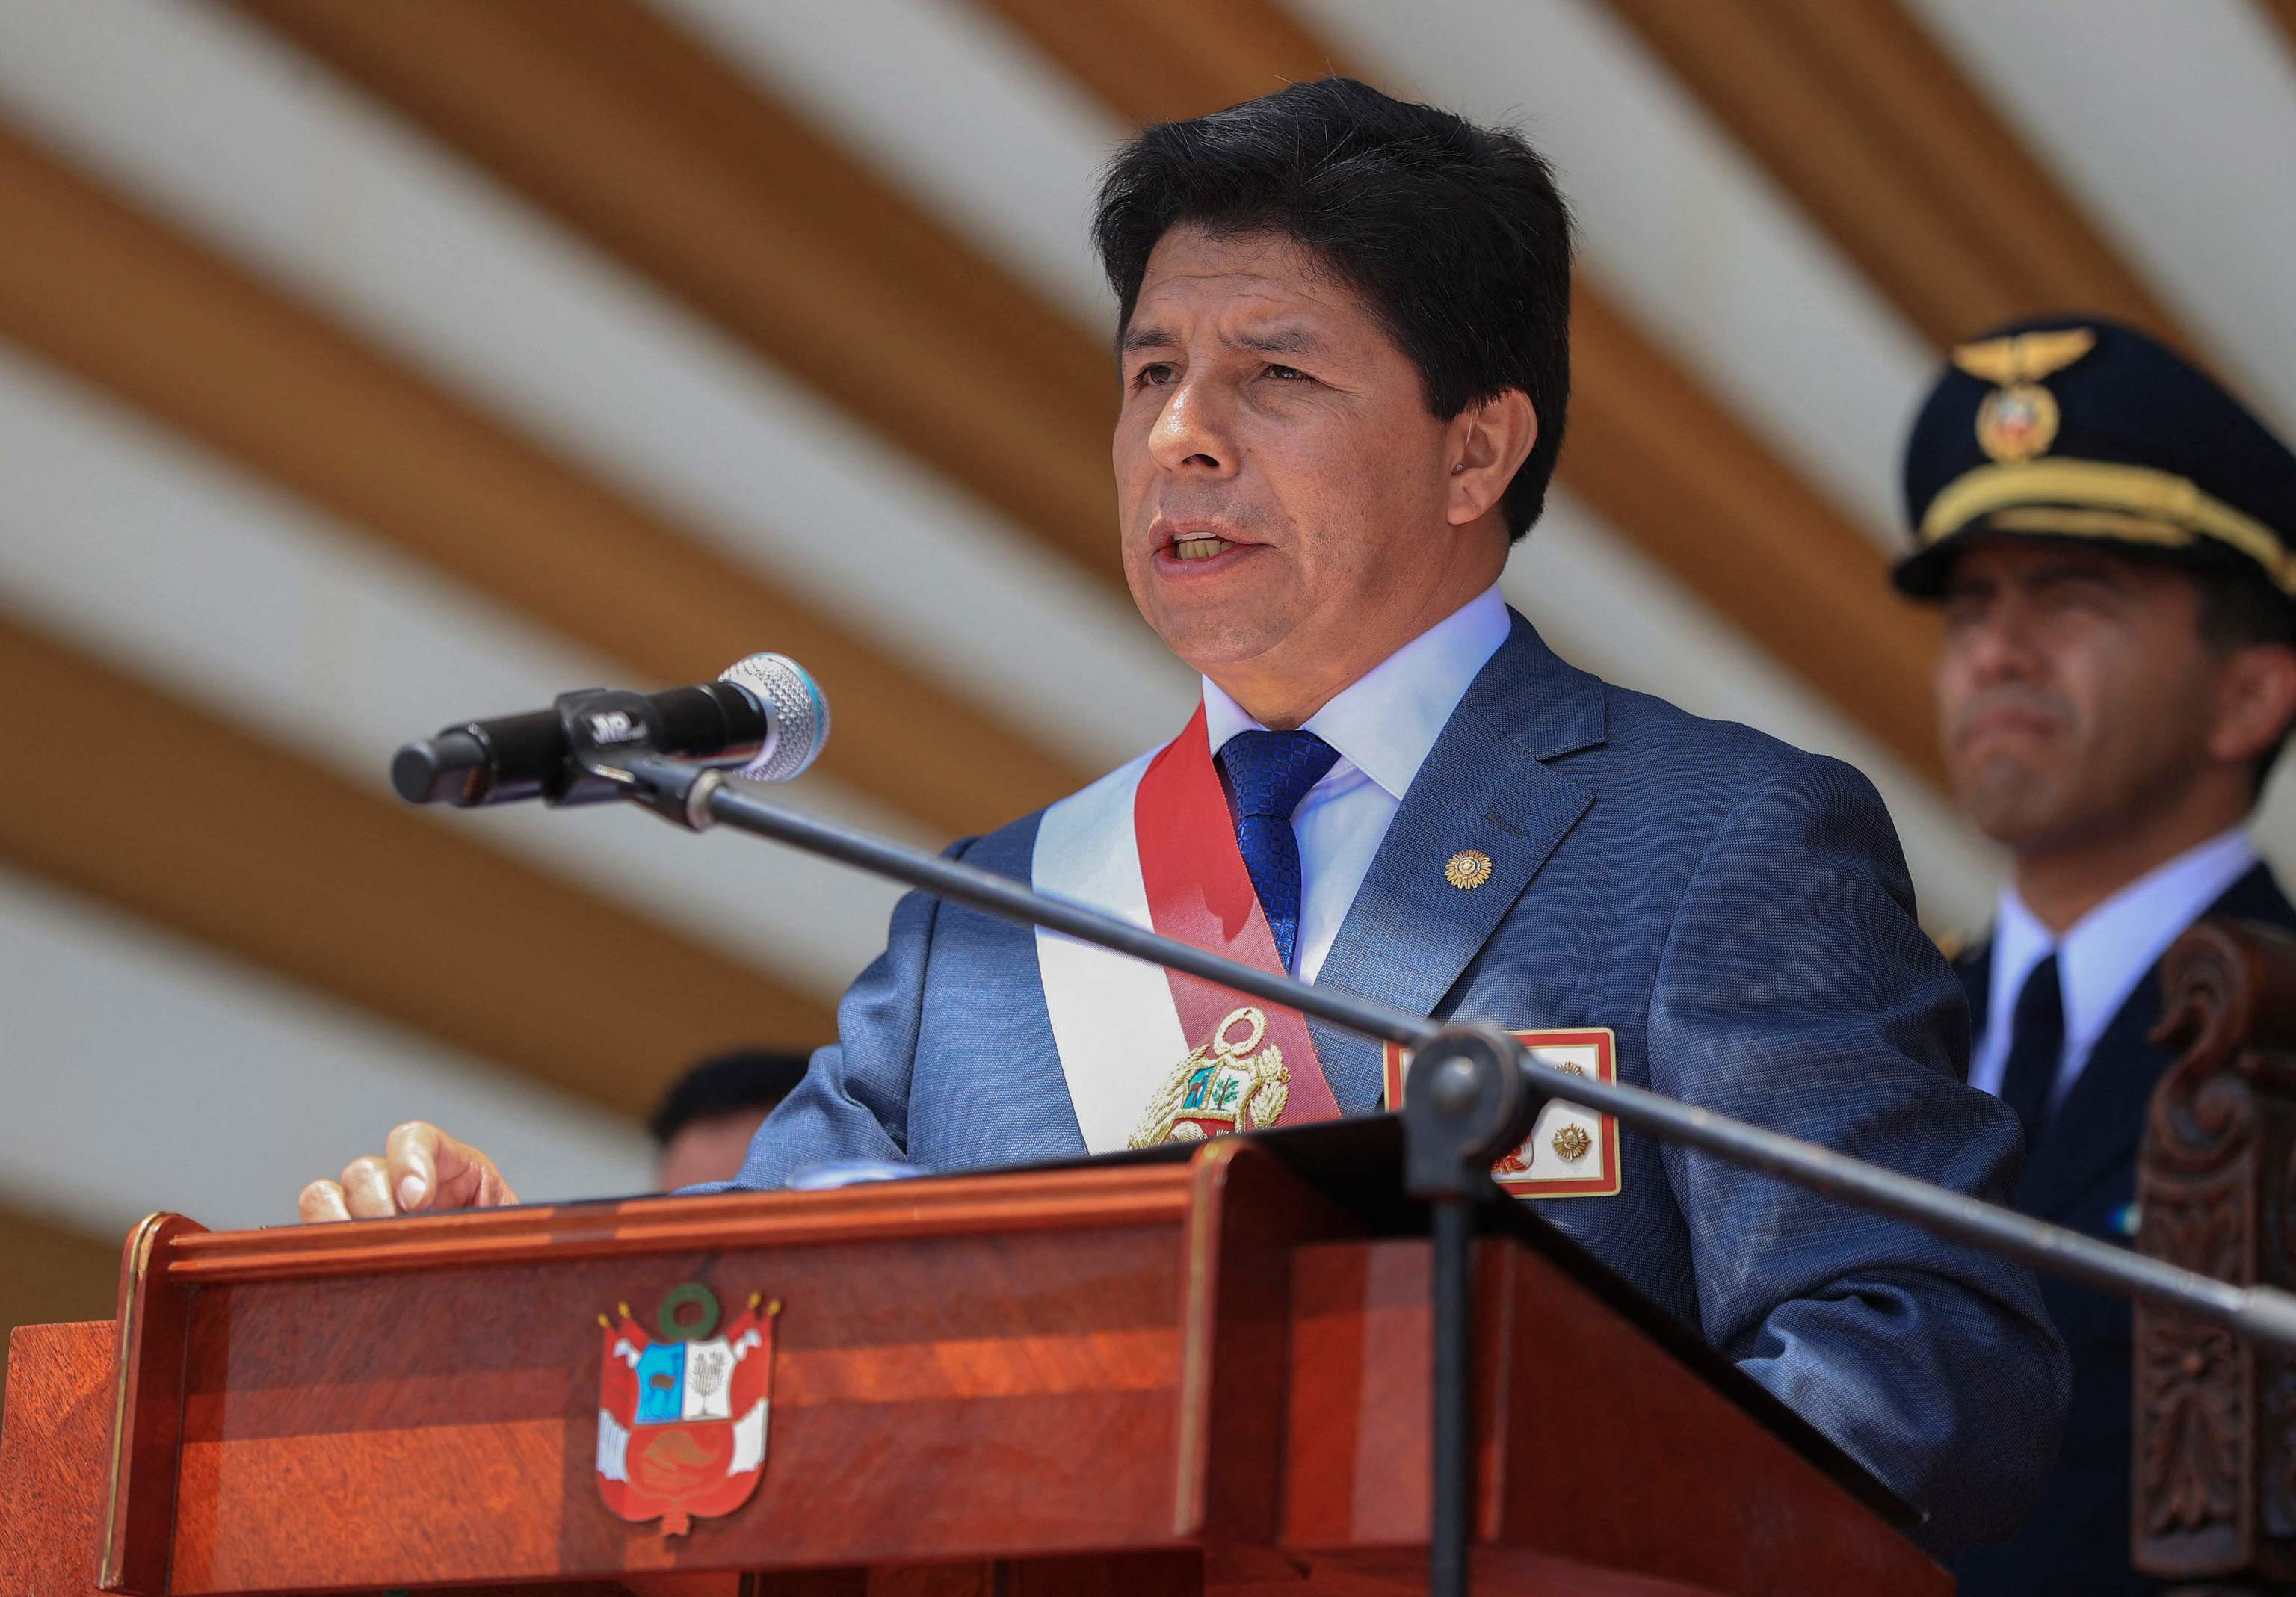 Autogolpe en Perú: Castillo disuelve el Congreso horas antes de su impeachment